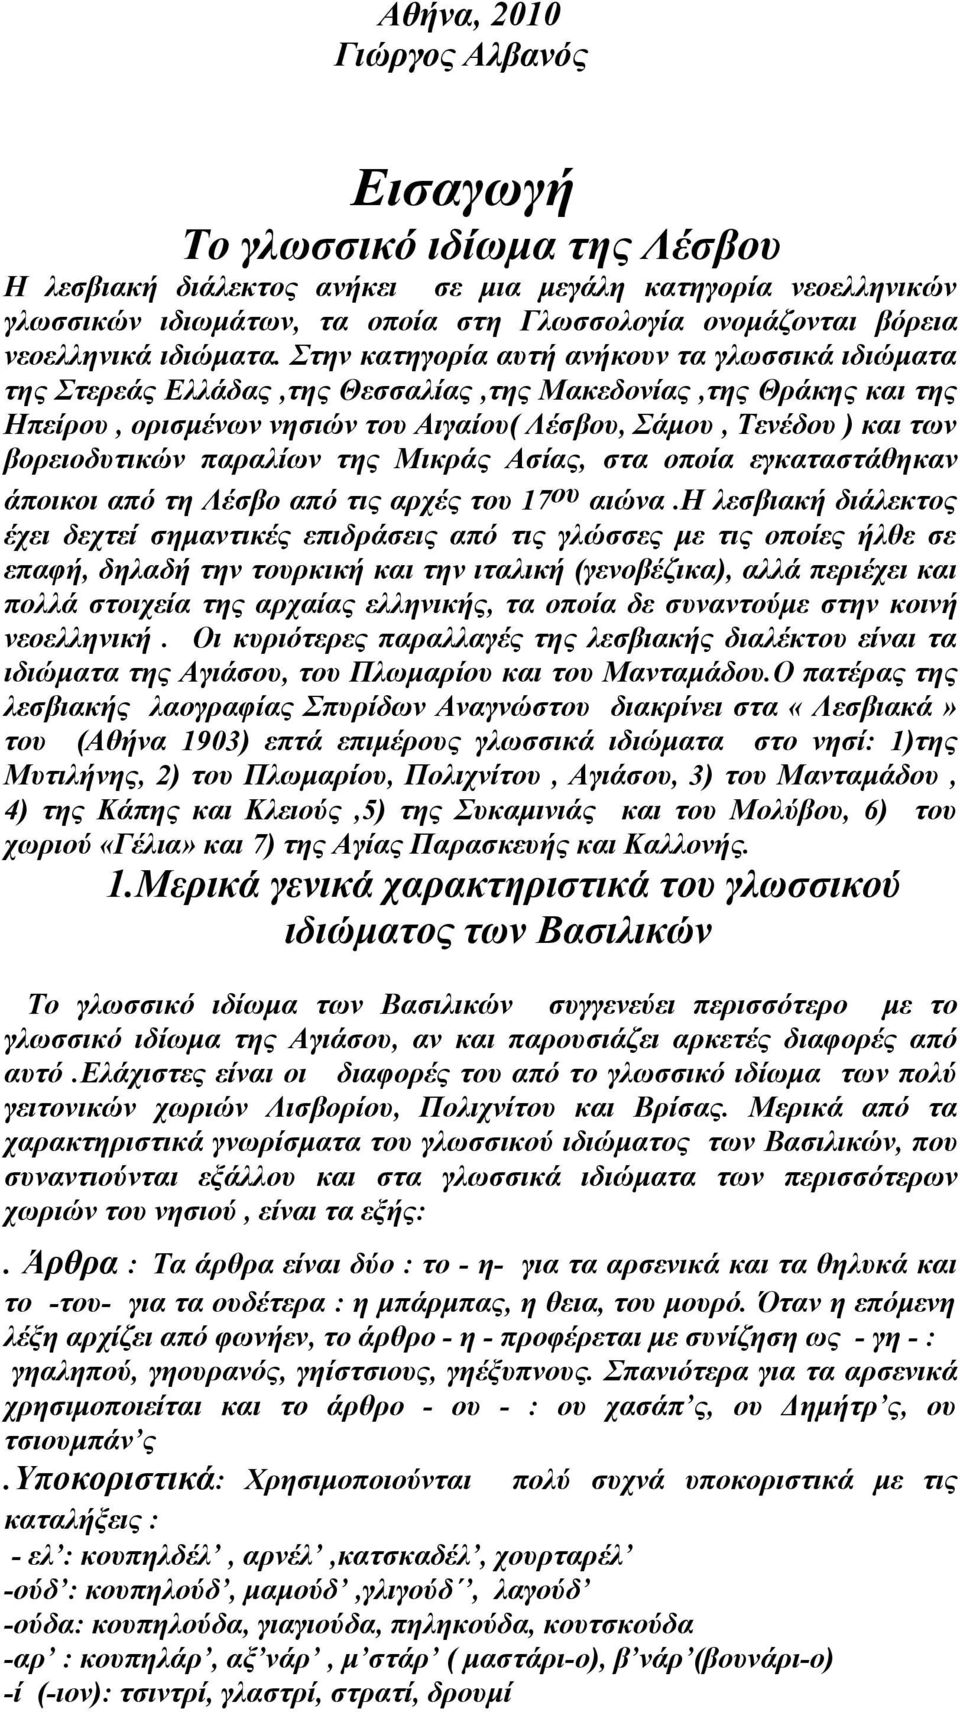 Στην κατηγορία αυτή ανήκουν τα γλωσσικά ιδιώματα της Στερεάς Ελλάδας,της Θεσσαλίας,της Μακεδονίας,της Θράκης και της Ηπείρου, ορισμένων νησιών του Αιγαίου( Λέσβου, Σάμου, Τενέδου ) και των